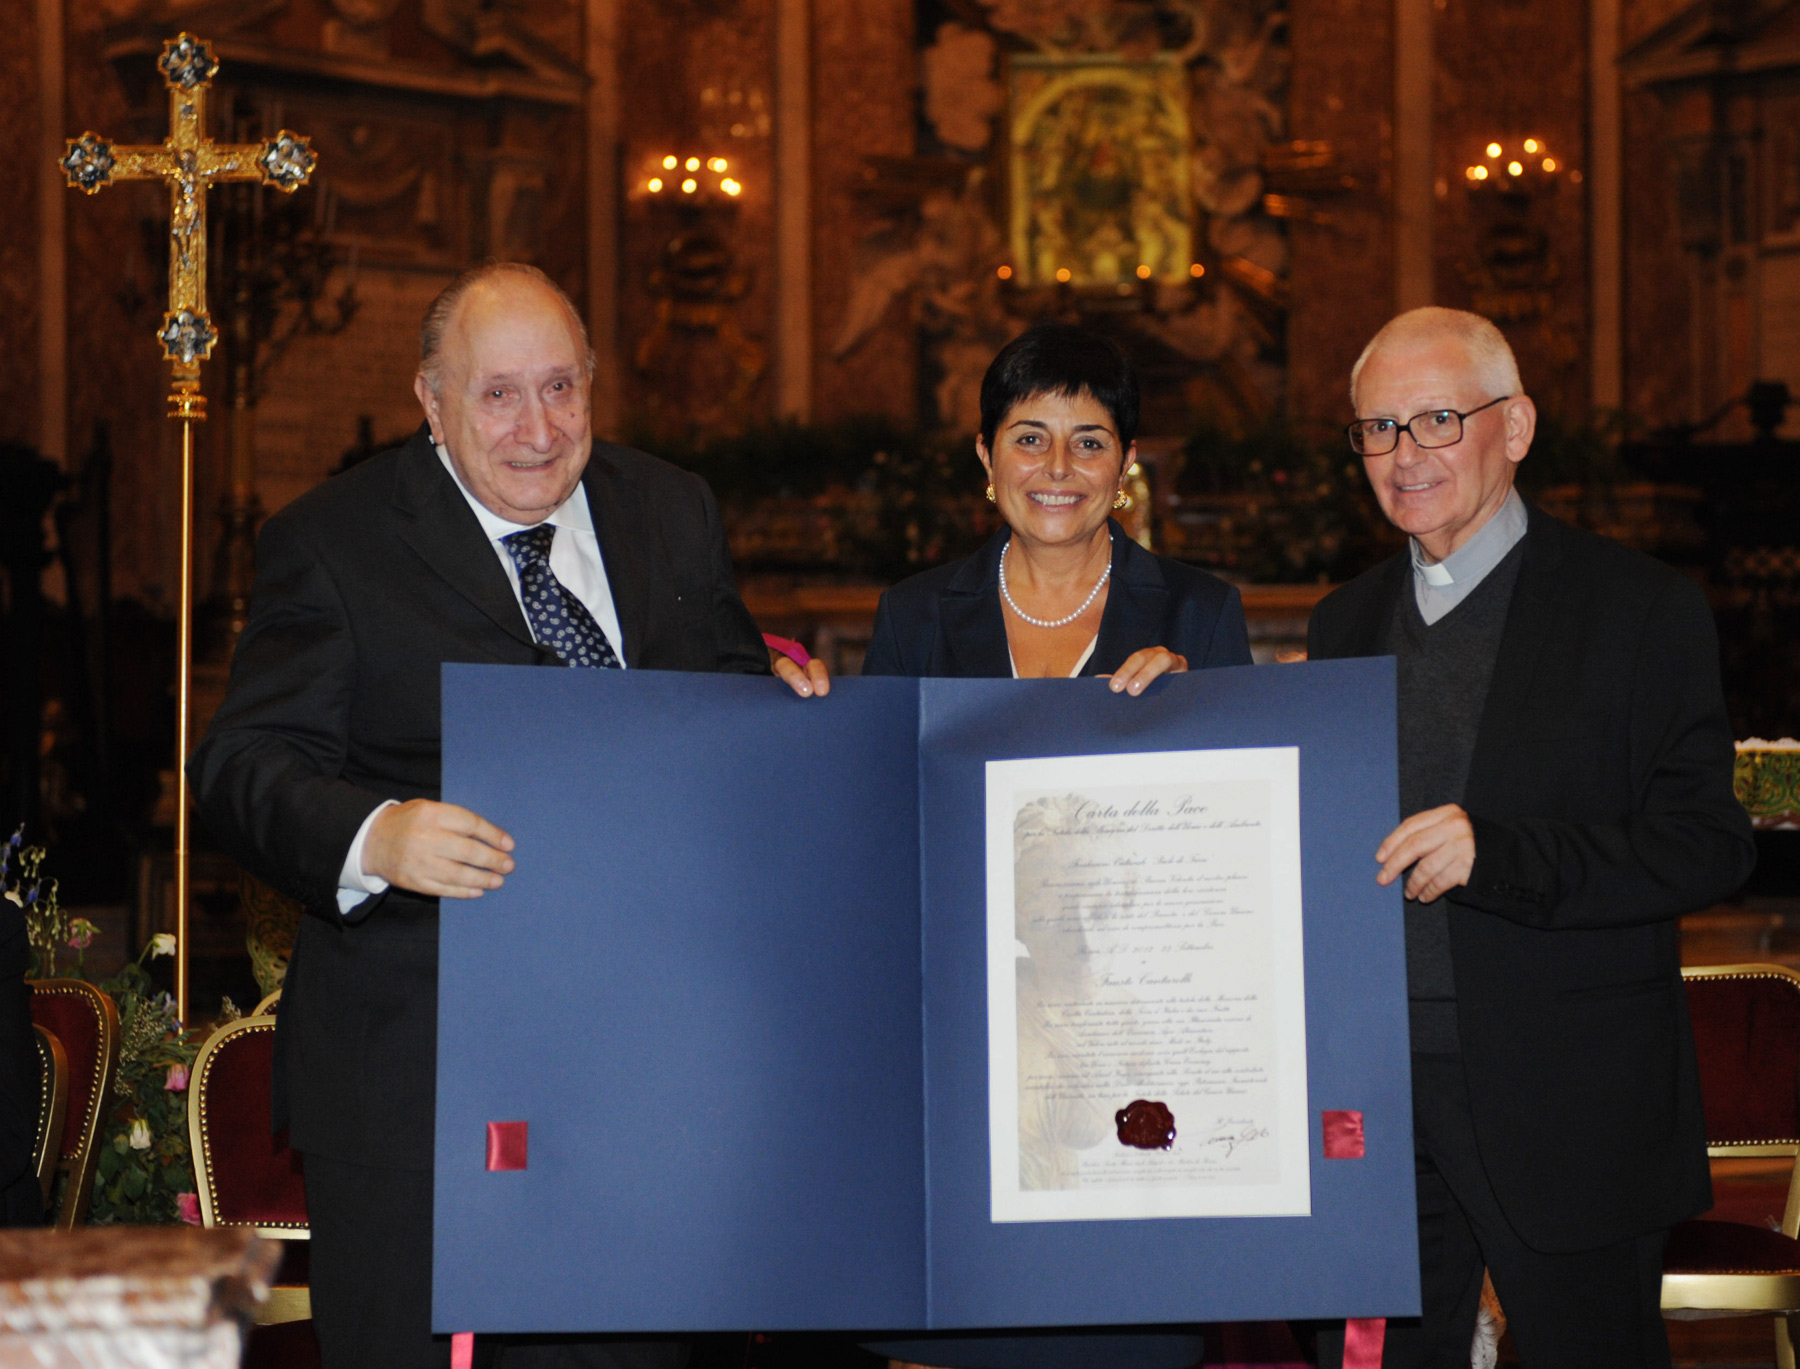 Luana Gallo consegna a Fausto Cantarelli la Carta della Pace presso la Basilica Santa Maria degli Angeli e dei Martiri di Roma